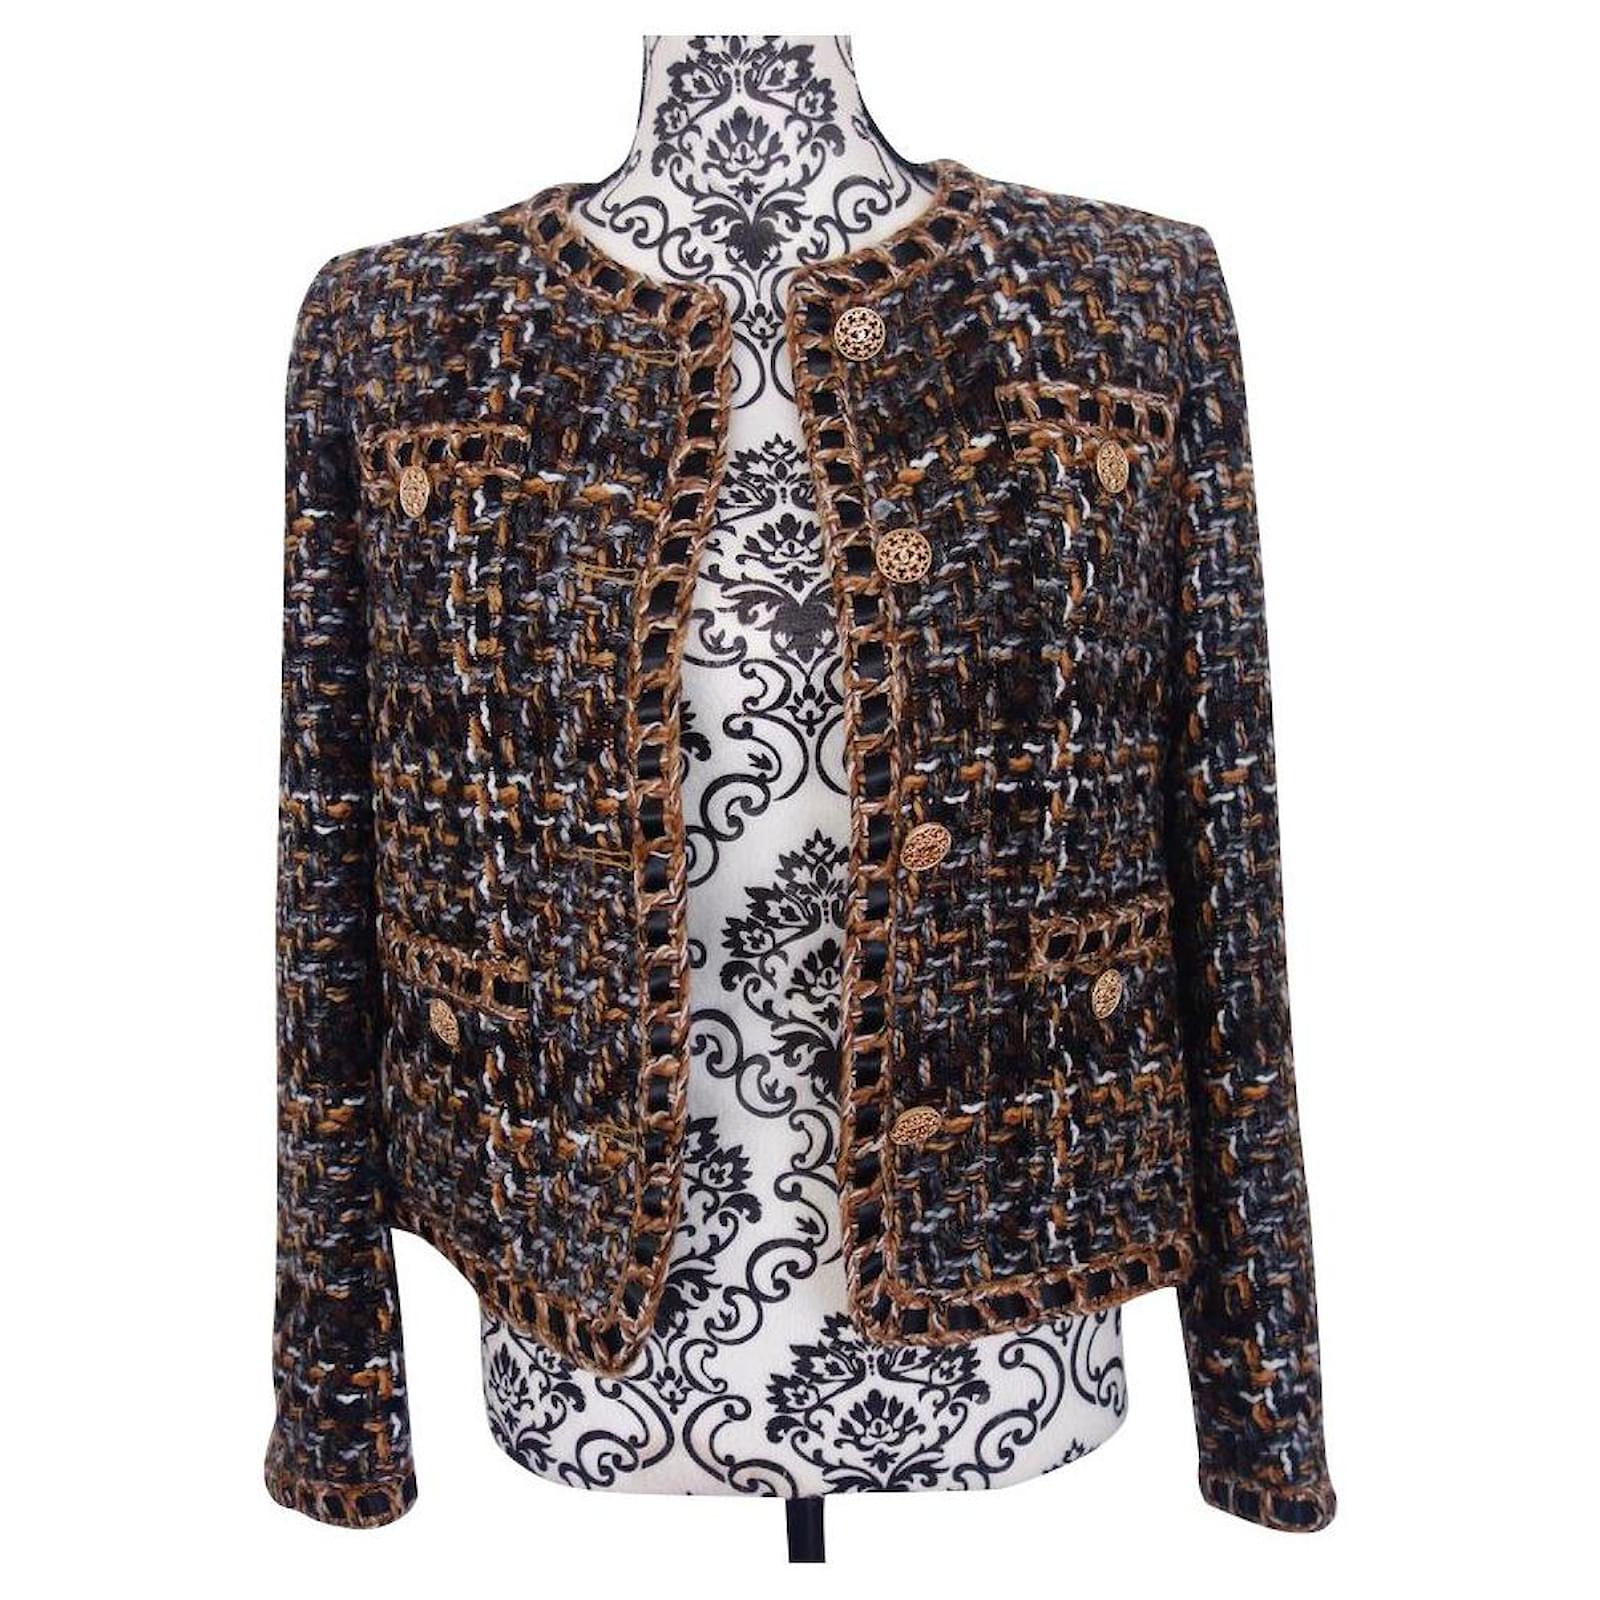 Iconic jacket Chanel tweed